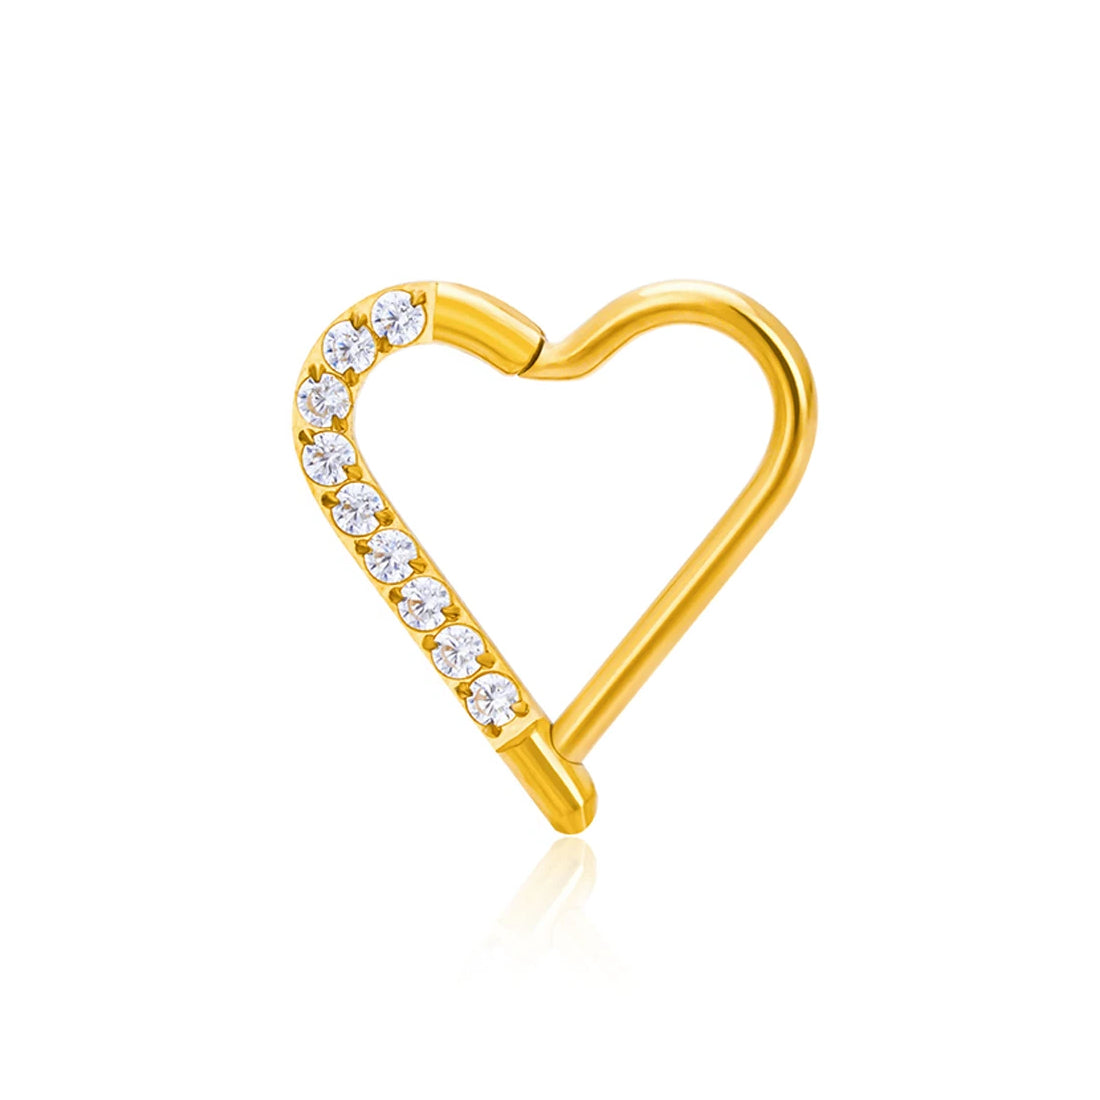 Anello Daith con piercing al cuore in oro e argento in titanio 16G con clicker a segmento incernierato con pietre CZ